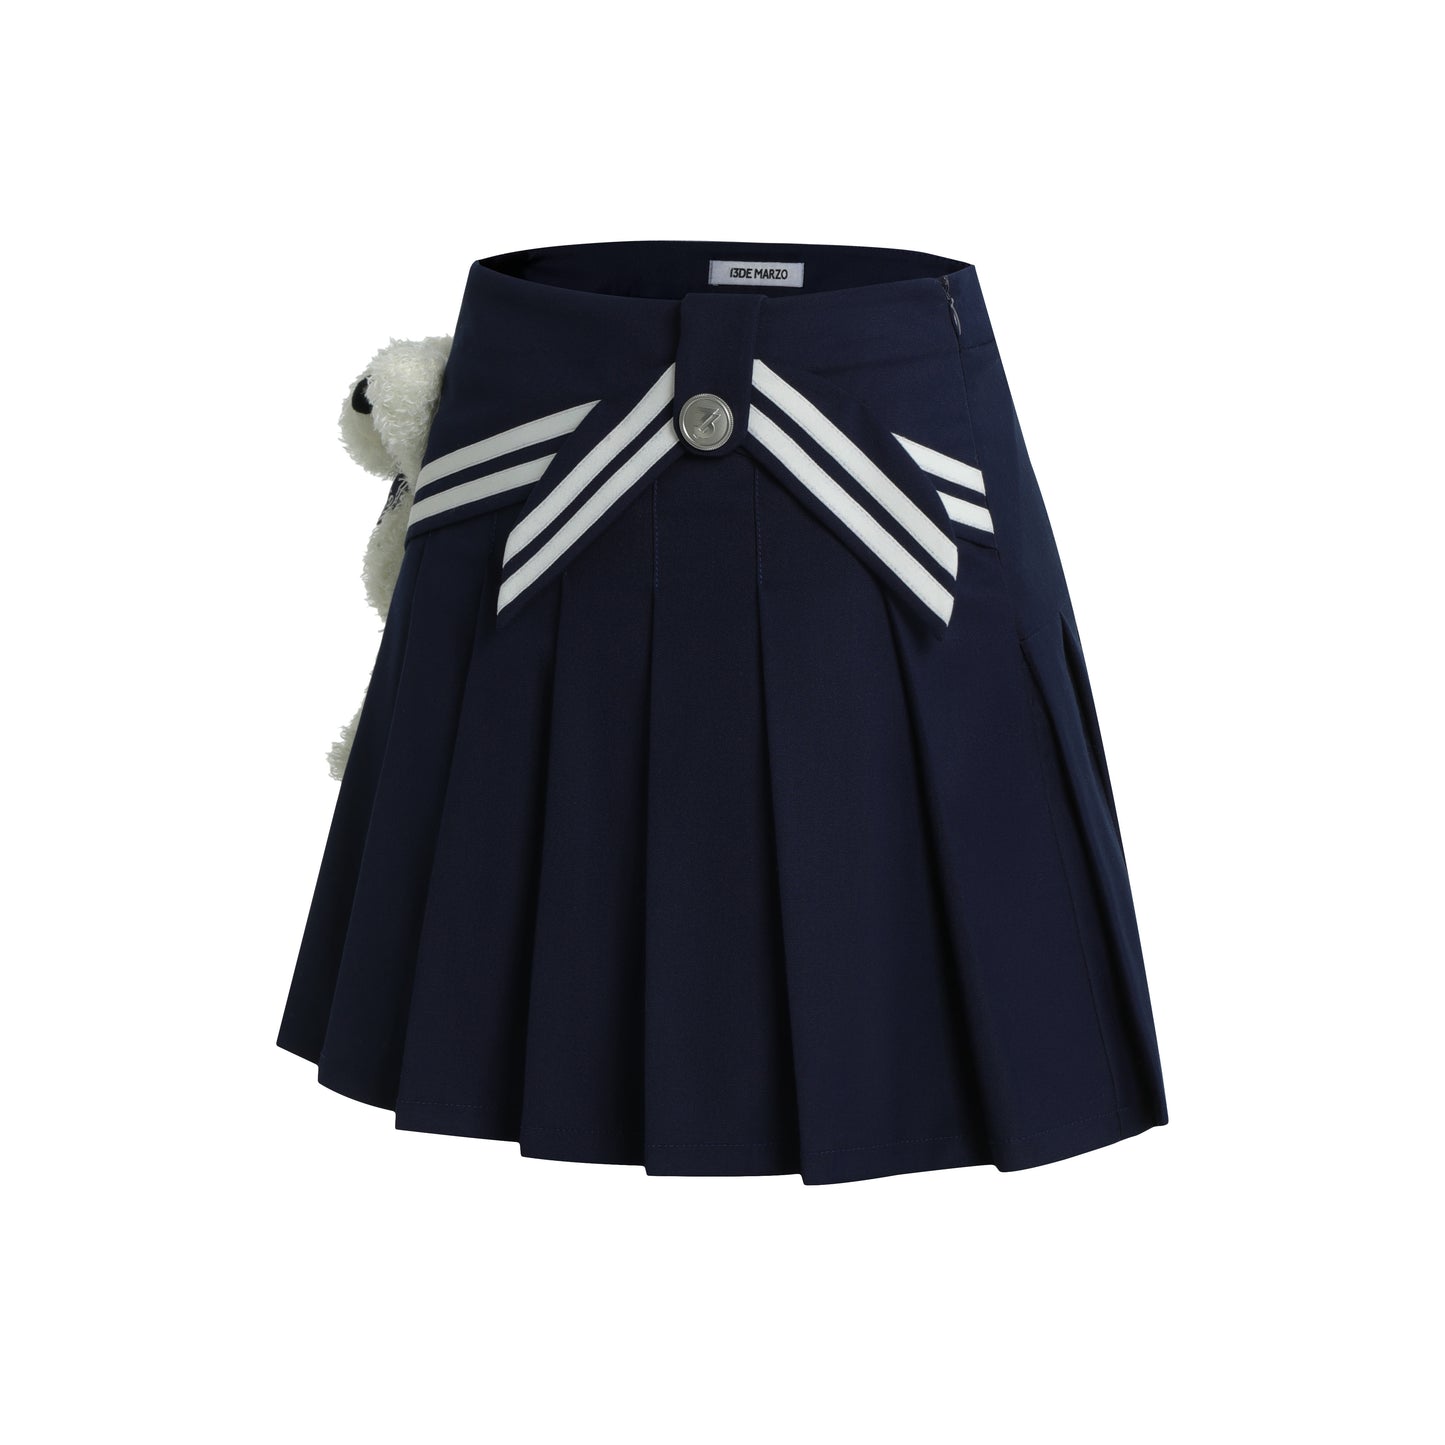 13DE MARZO Bear Sailor Dress